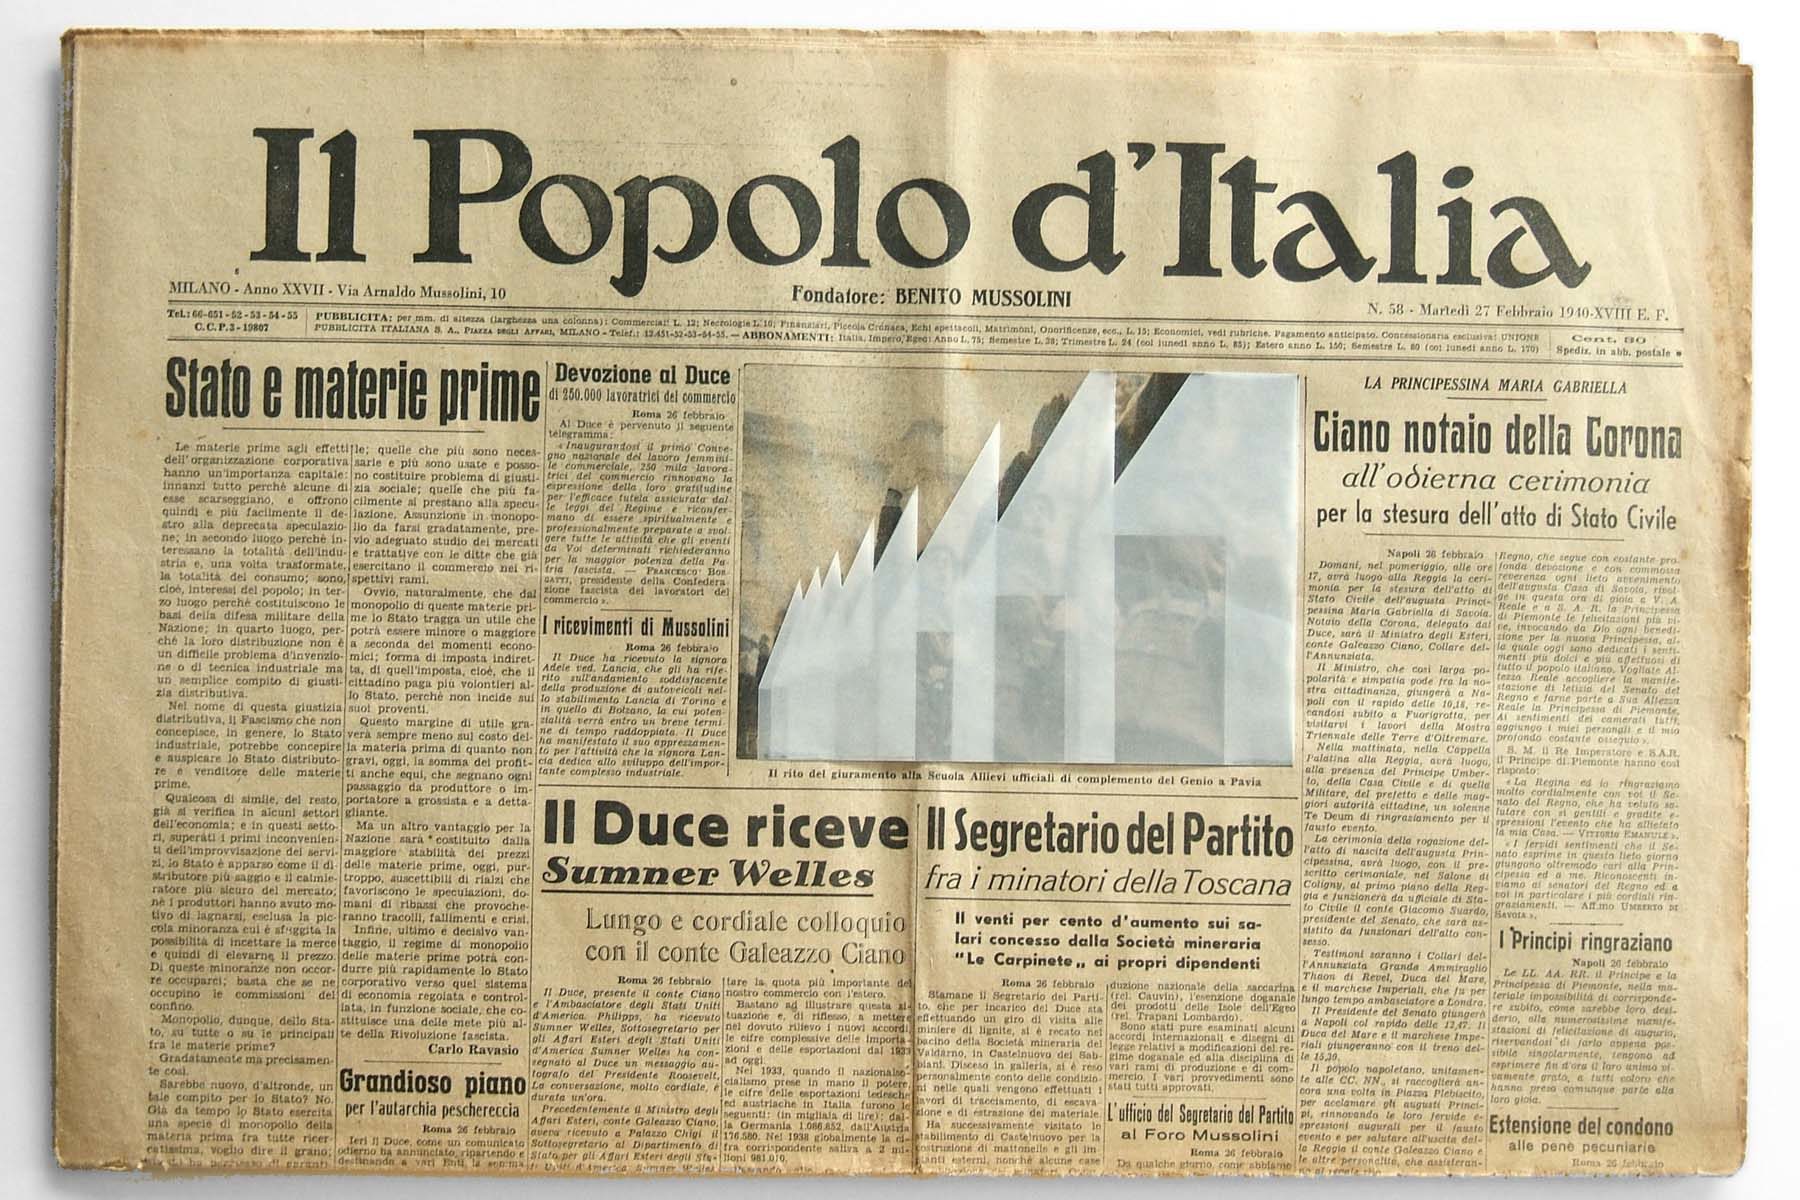 G. Morbin, Il Popolo d’Italia, 2007, collage on vintage newspaper, 33 x 47 cm